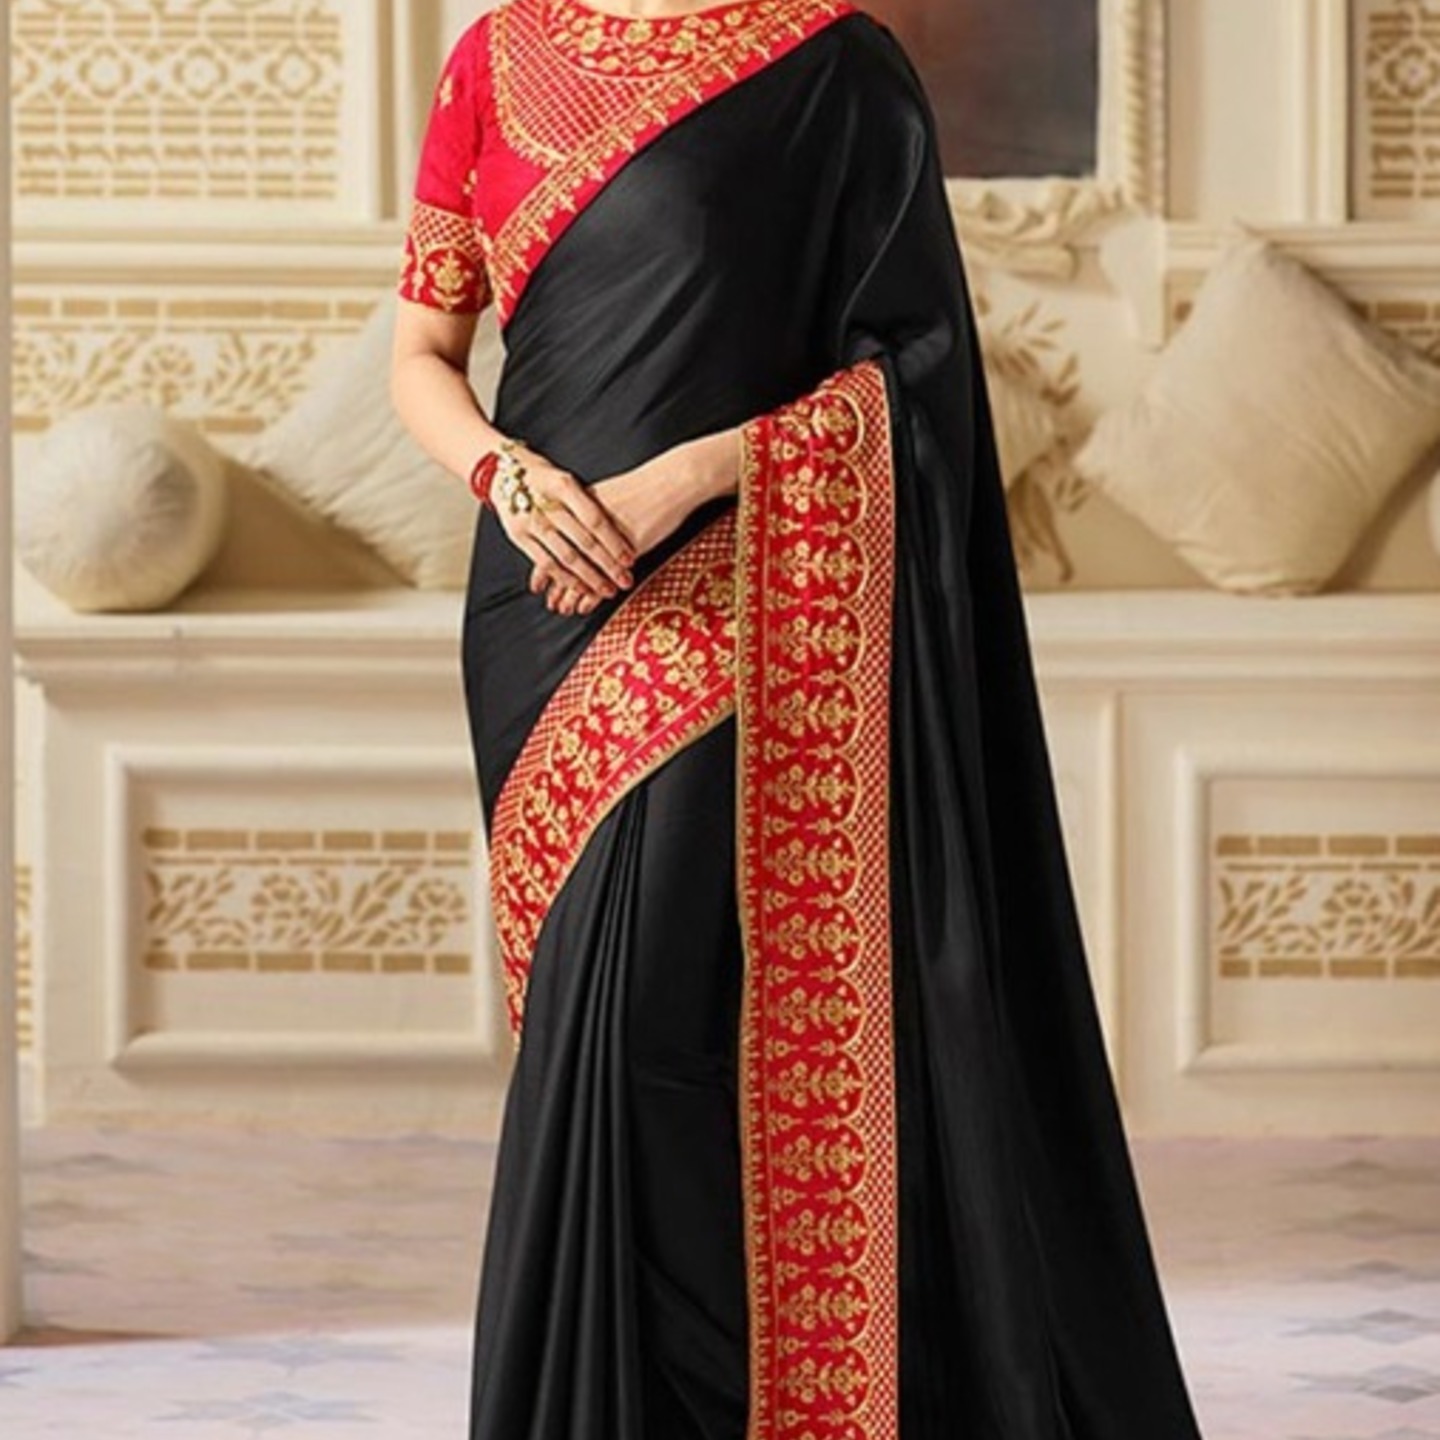 Robe Riche Black Color Malai Silk Embroidery With Lace Saree 